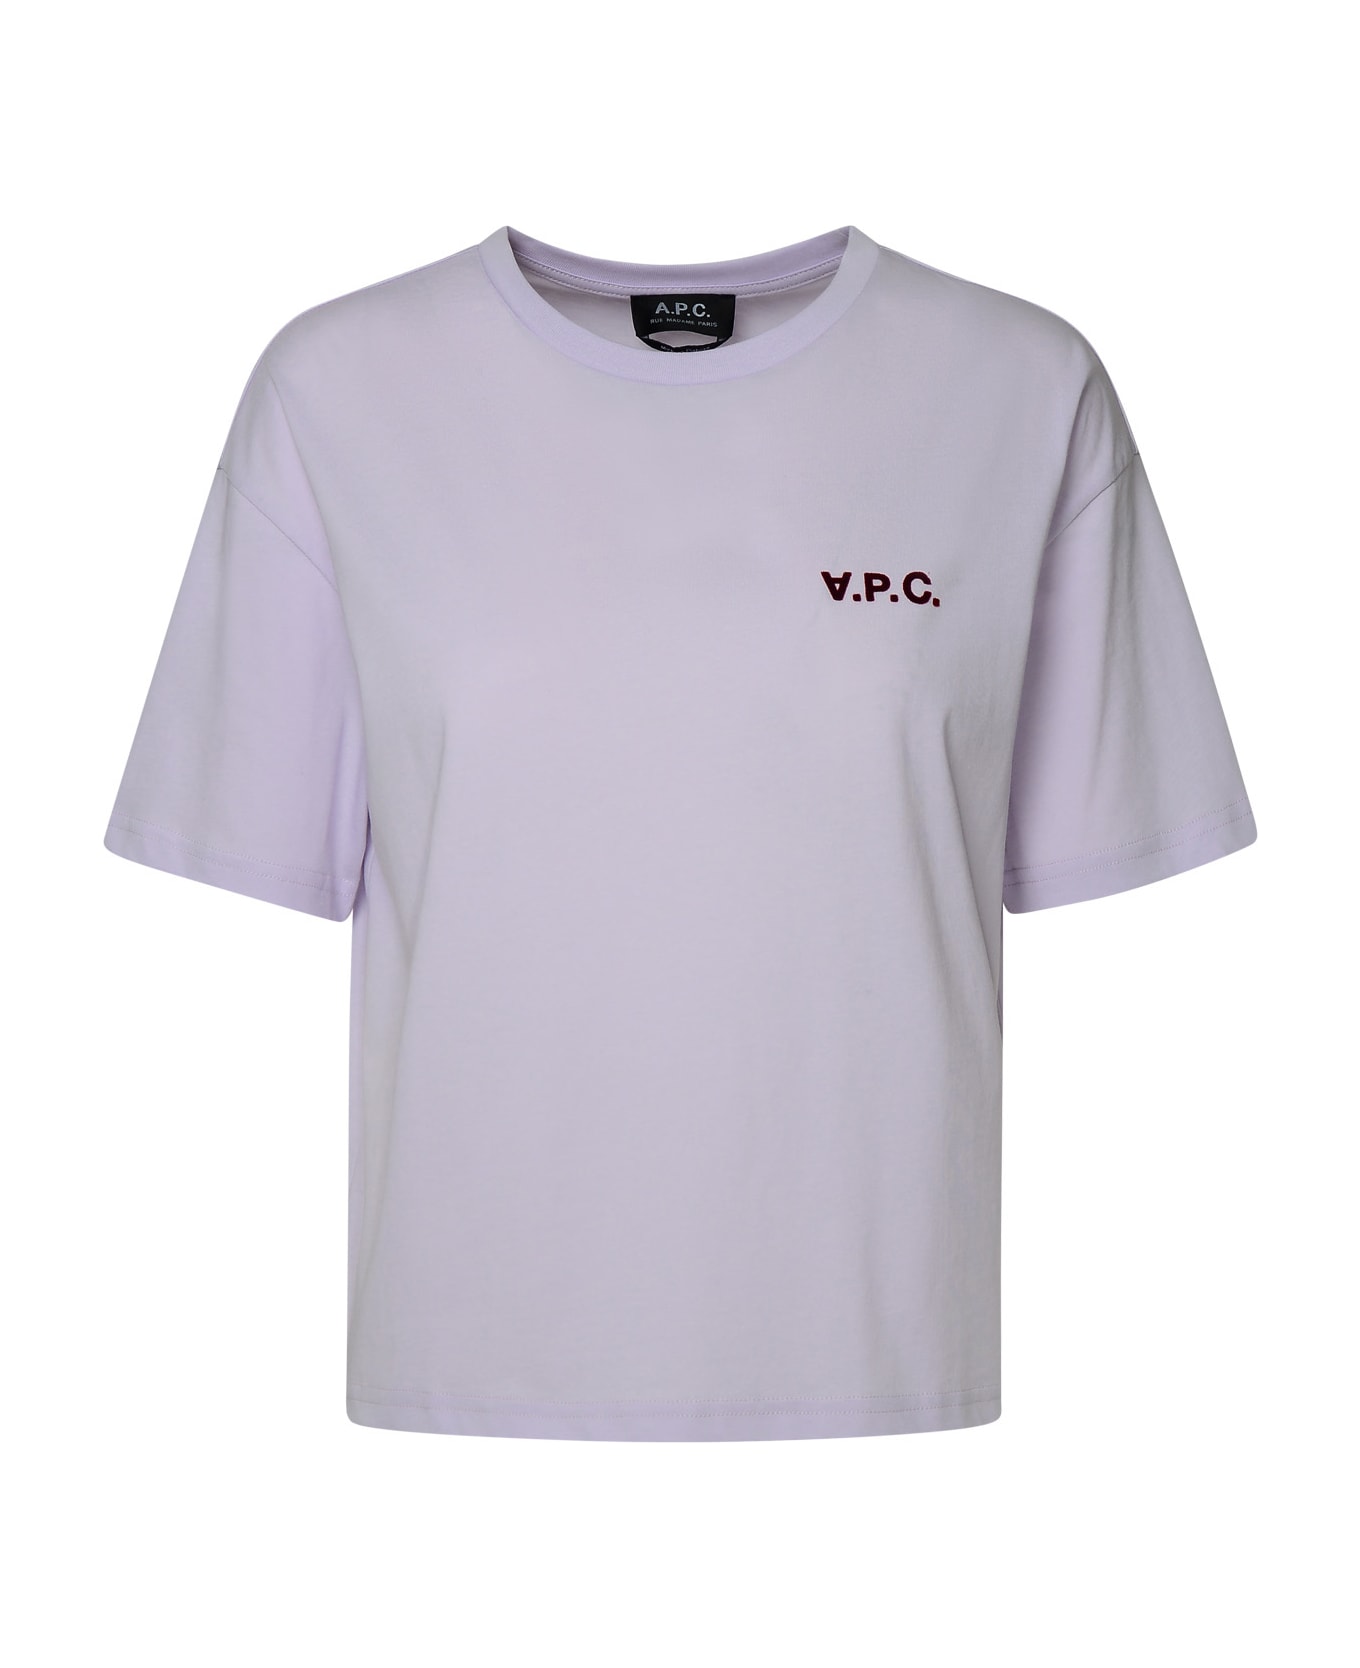 A.P.C. Ava Lilac Cotton T-shirt - Lilla Tシャツ